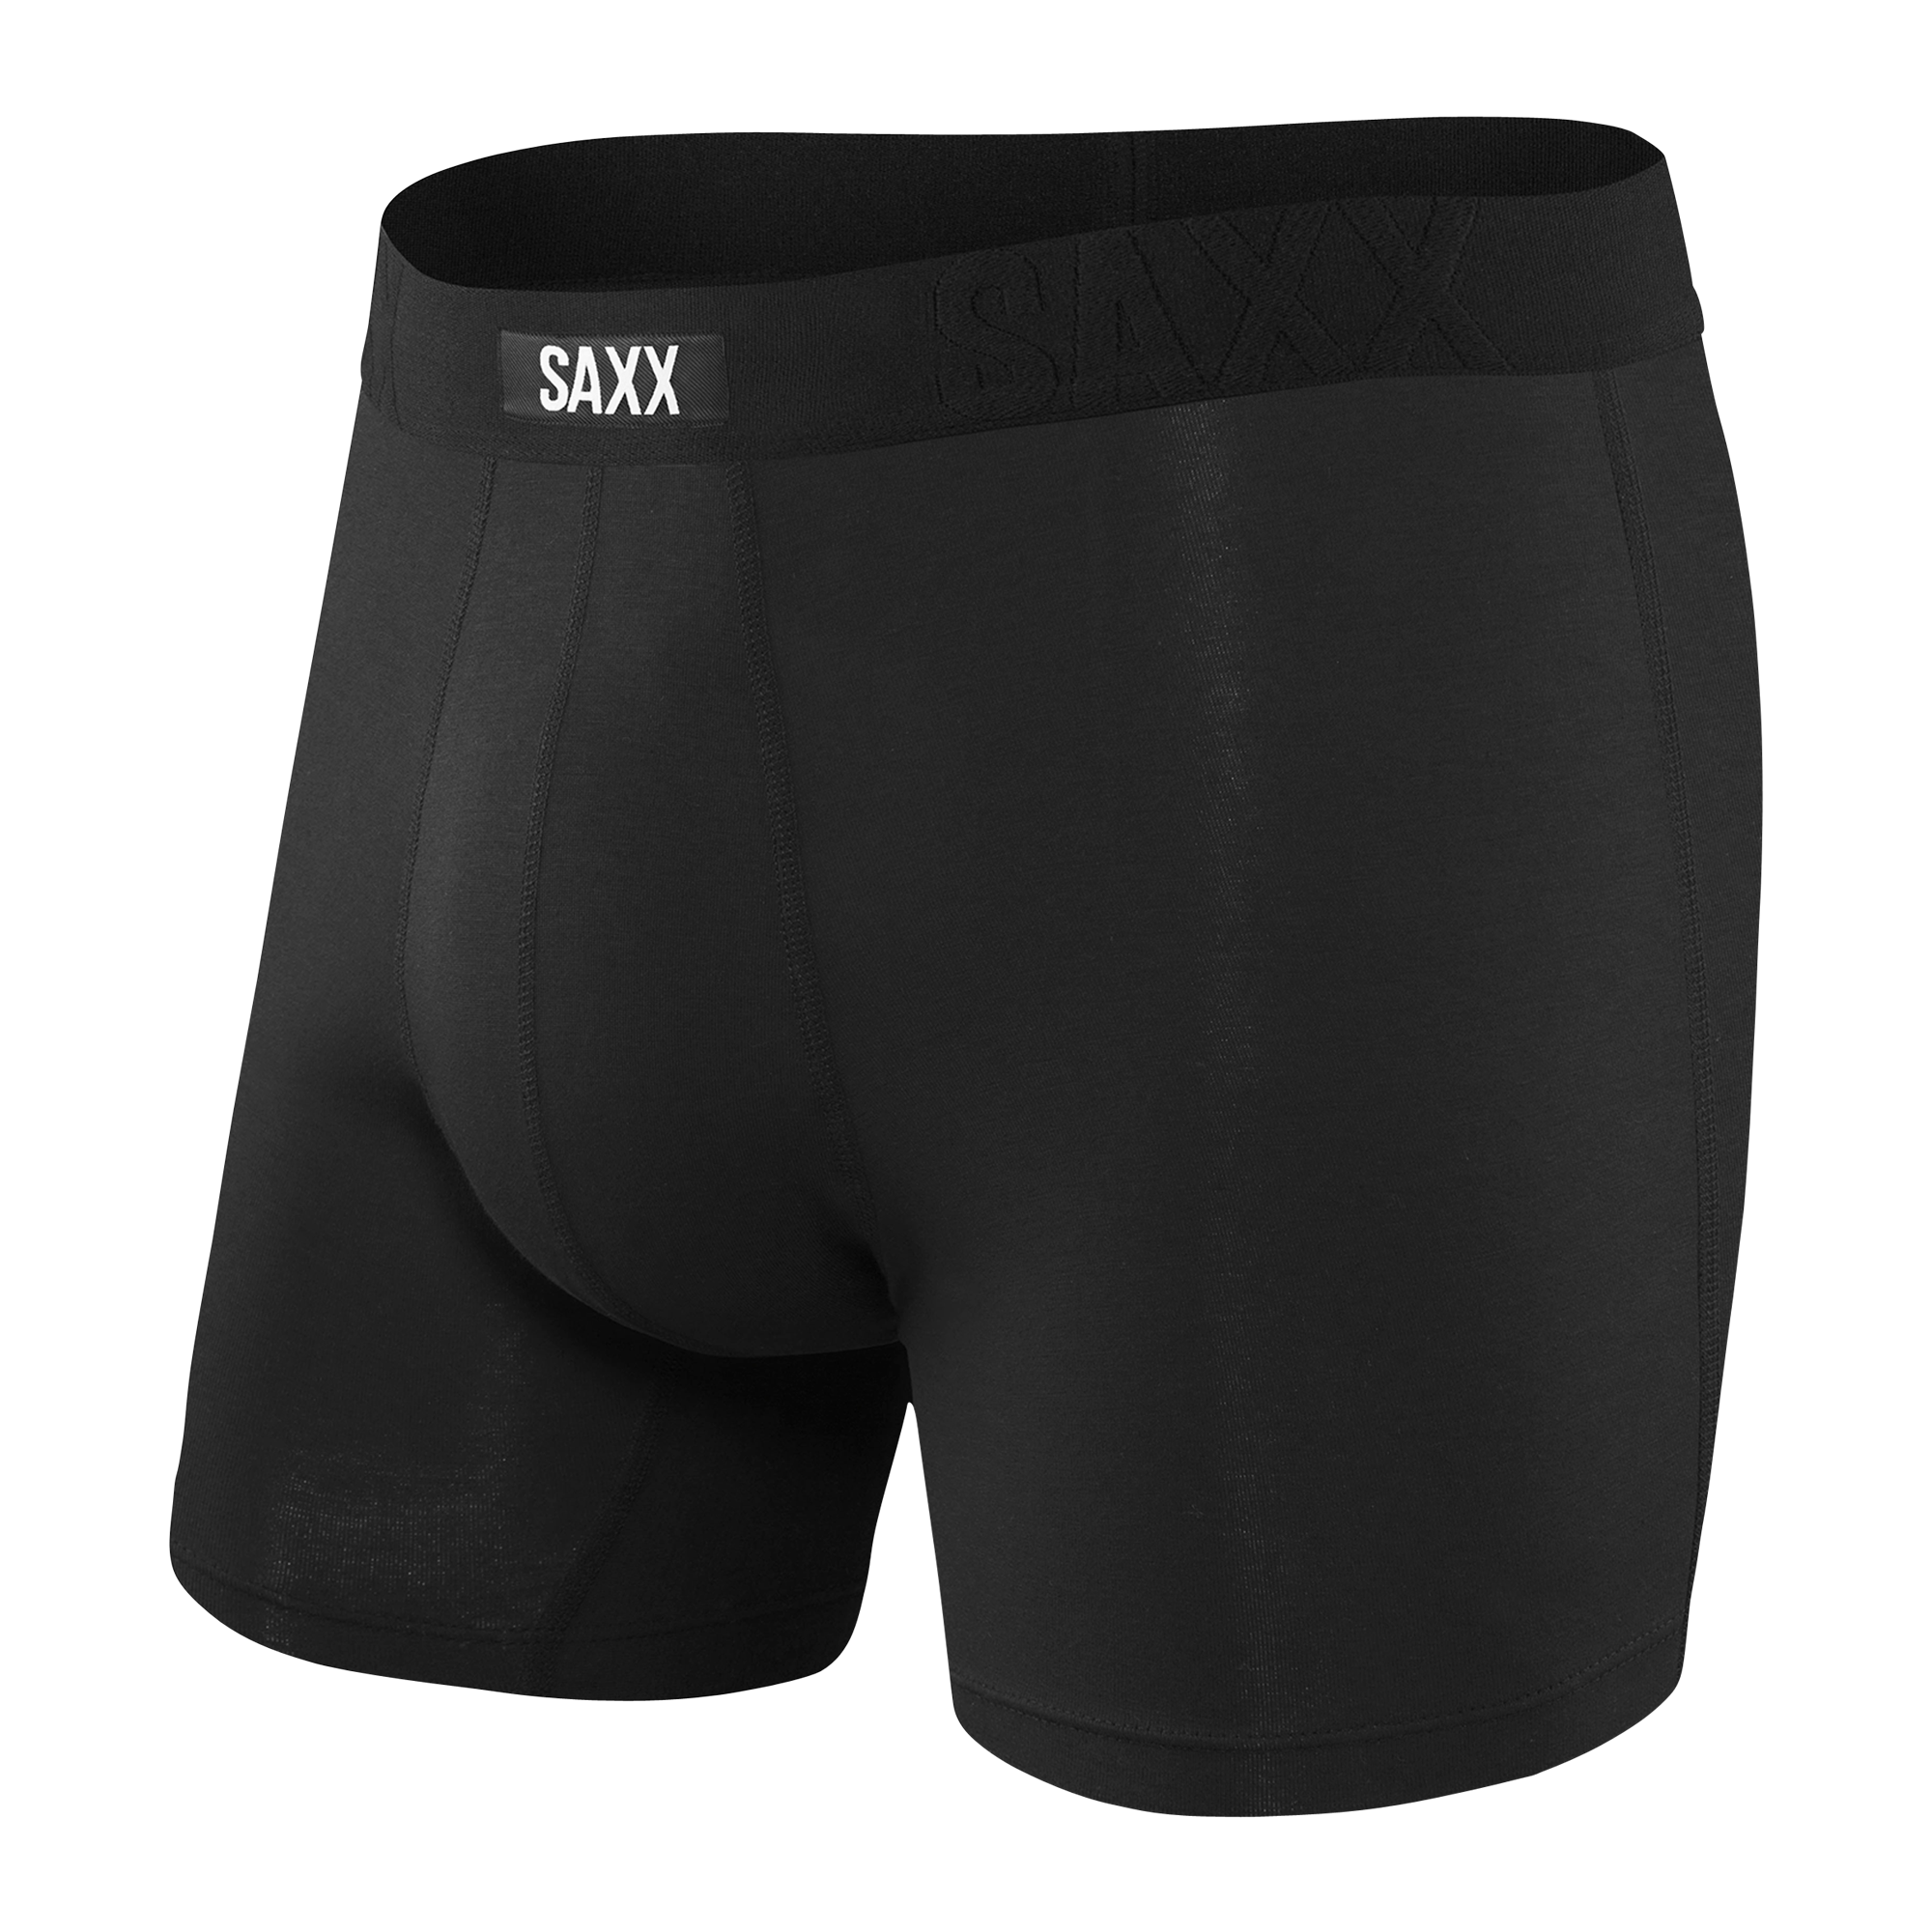 Saxx Undercover Cotton - Ropa interior - Hombre